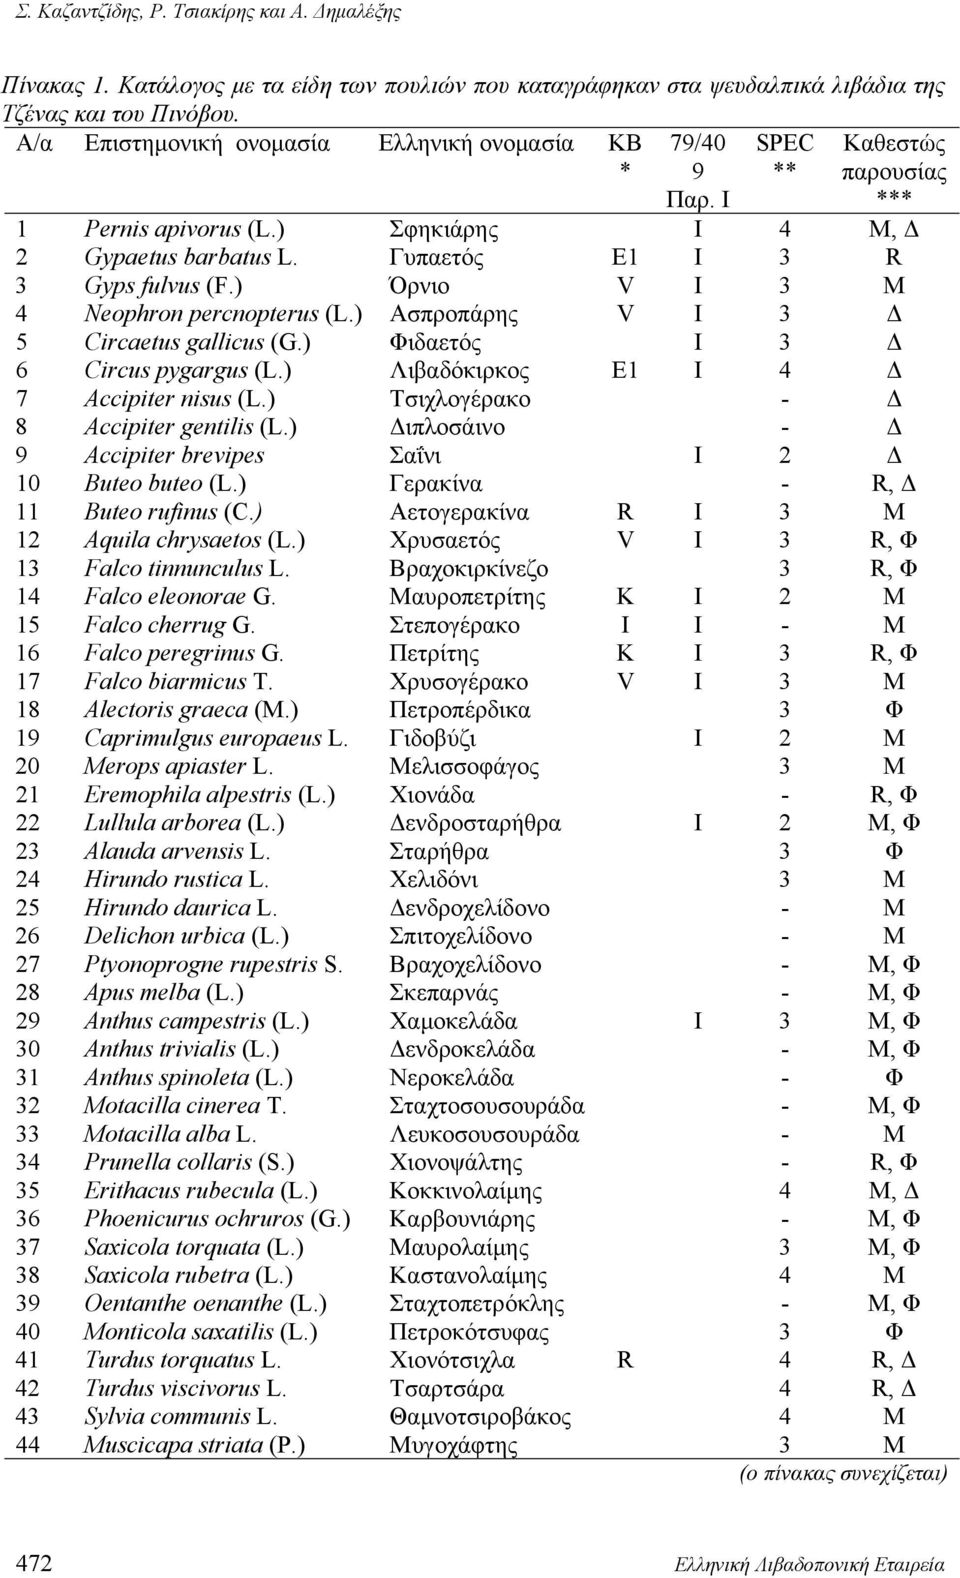 ) Όρνιο V Ι 3 Μ 4 Neophron percnopterus (L.) Ασπροπάρης V Ι 3 Δ 5 Circaetus gallicus (G.) Φιδαετός Ι 3 Δ 6 Circus pygargus (L.) Λιβαδόκιρκος E1 Ι 4 Δ 7 Accipiter nisus (L.